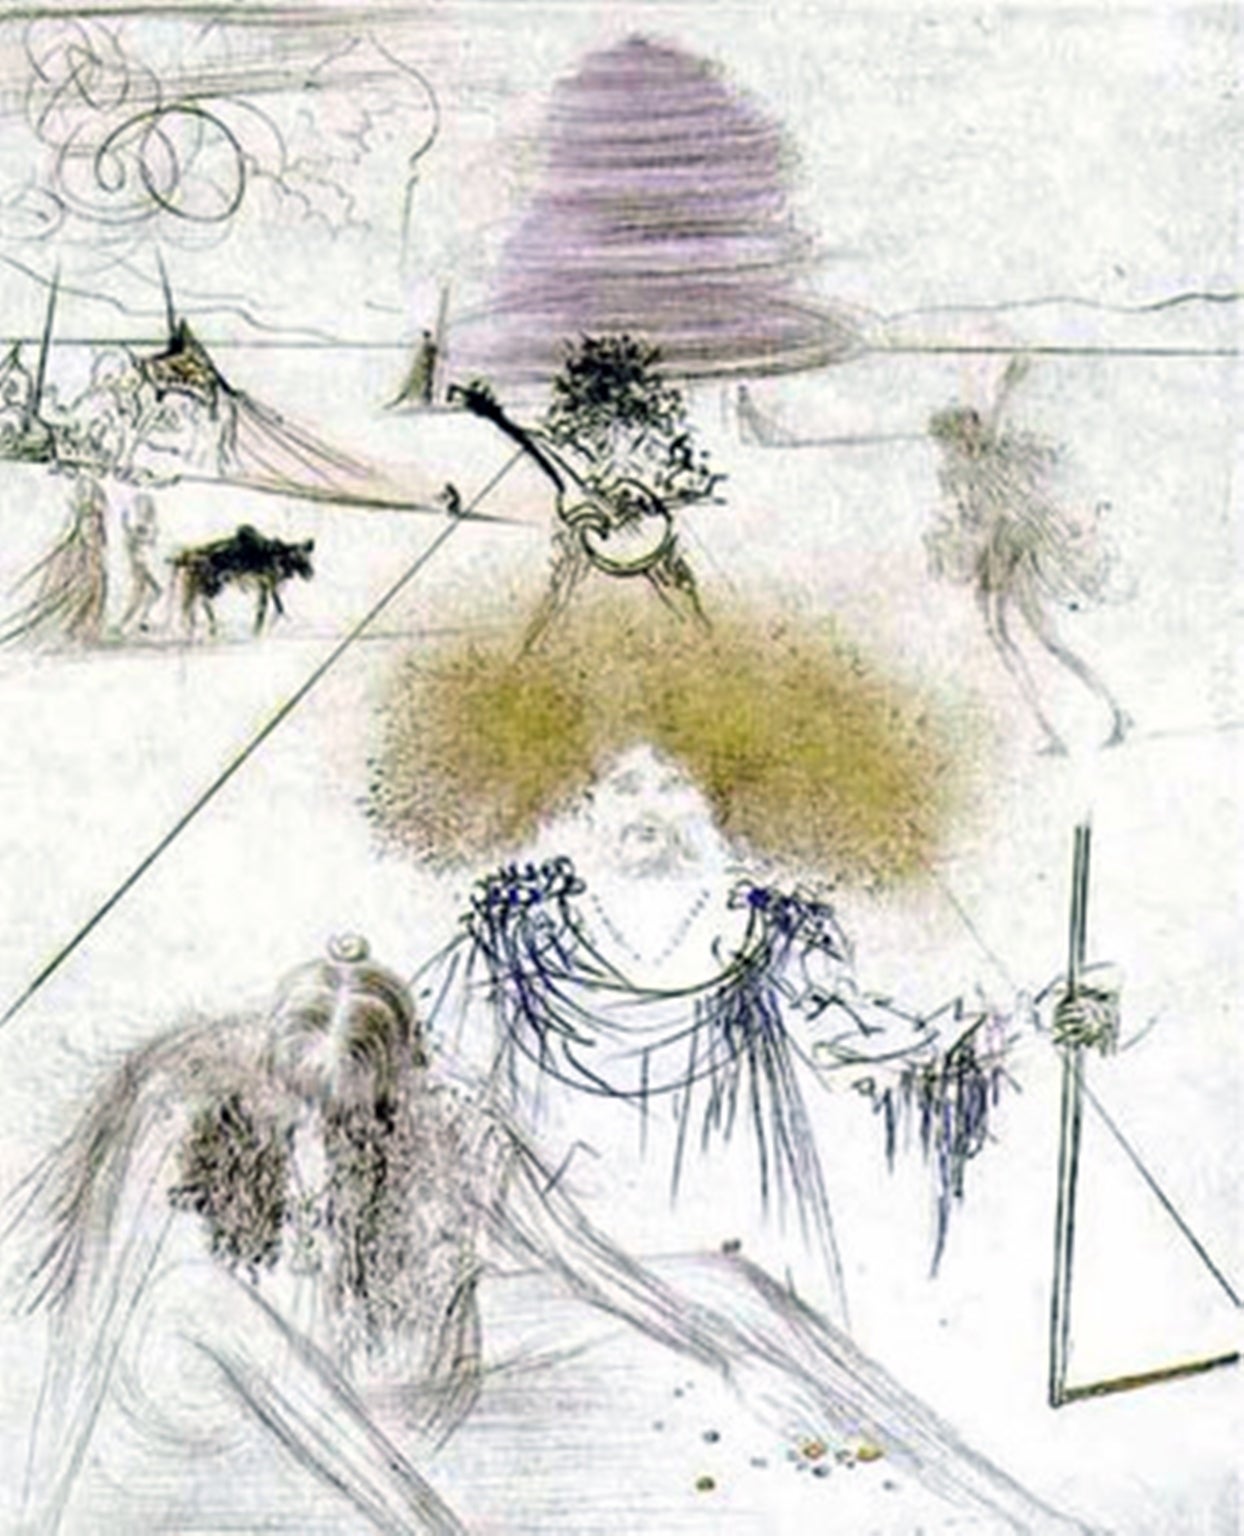 Le Vieux Hippie (The Old Hippie) - Print by Salvador Dalí